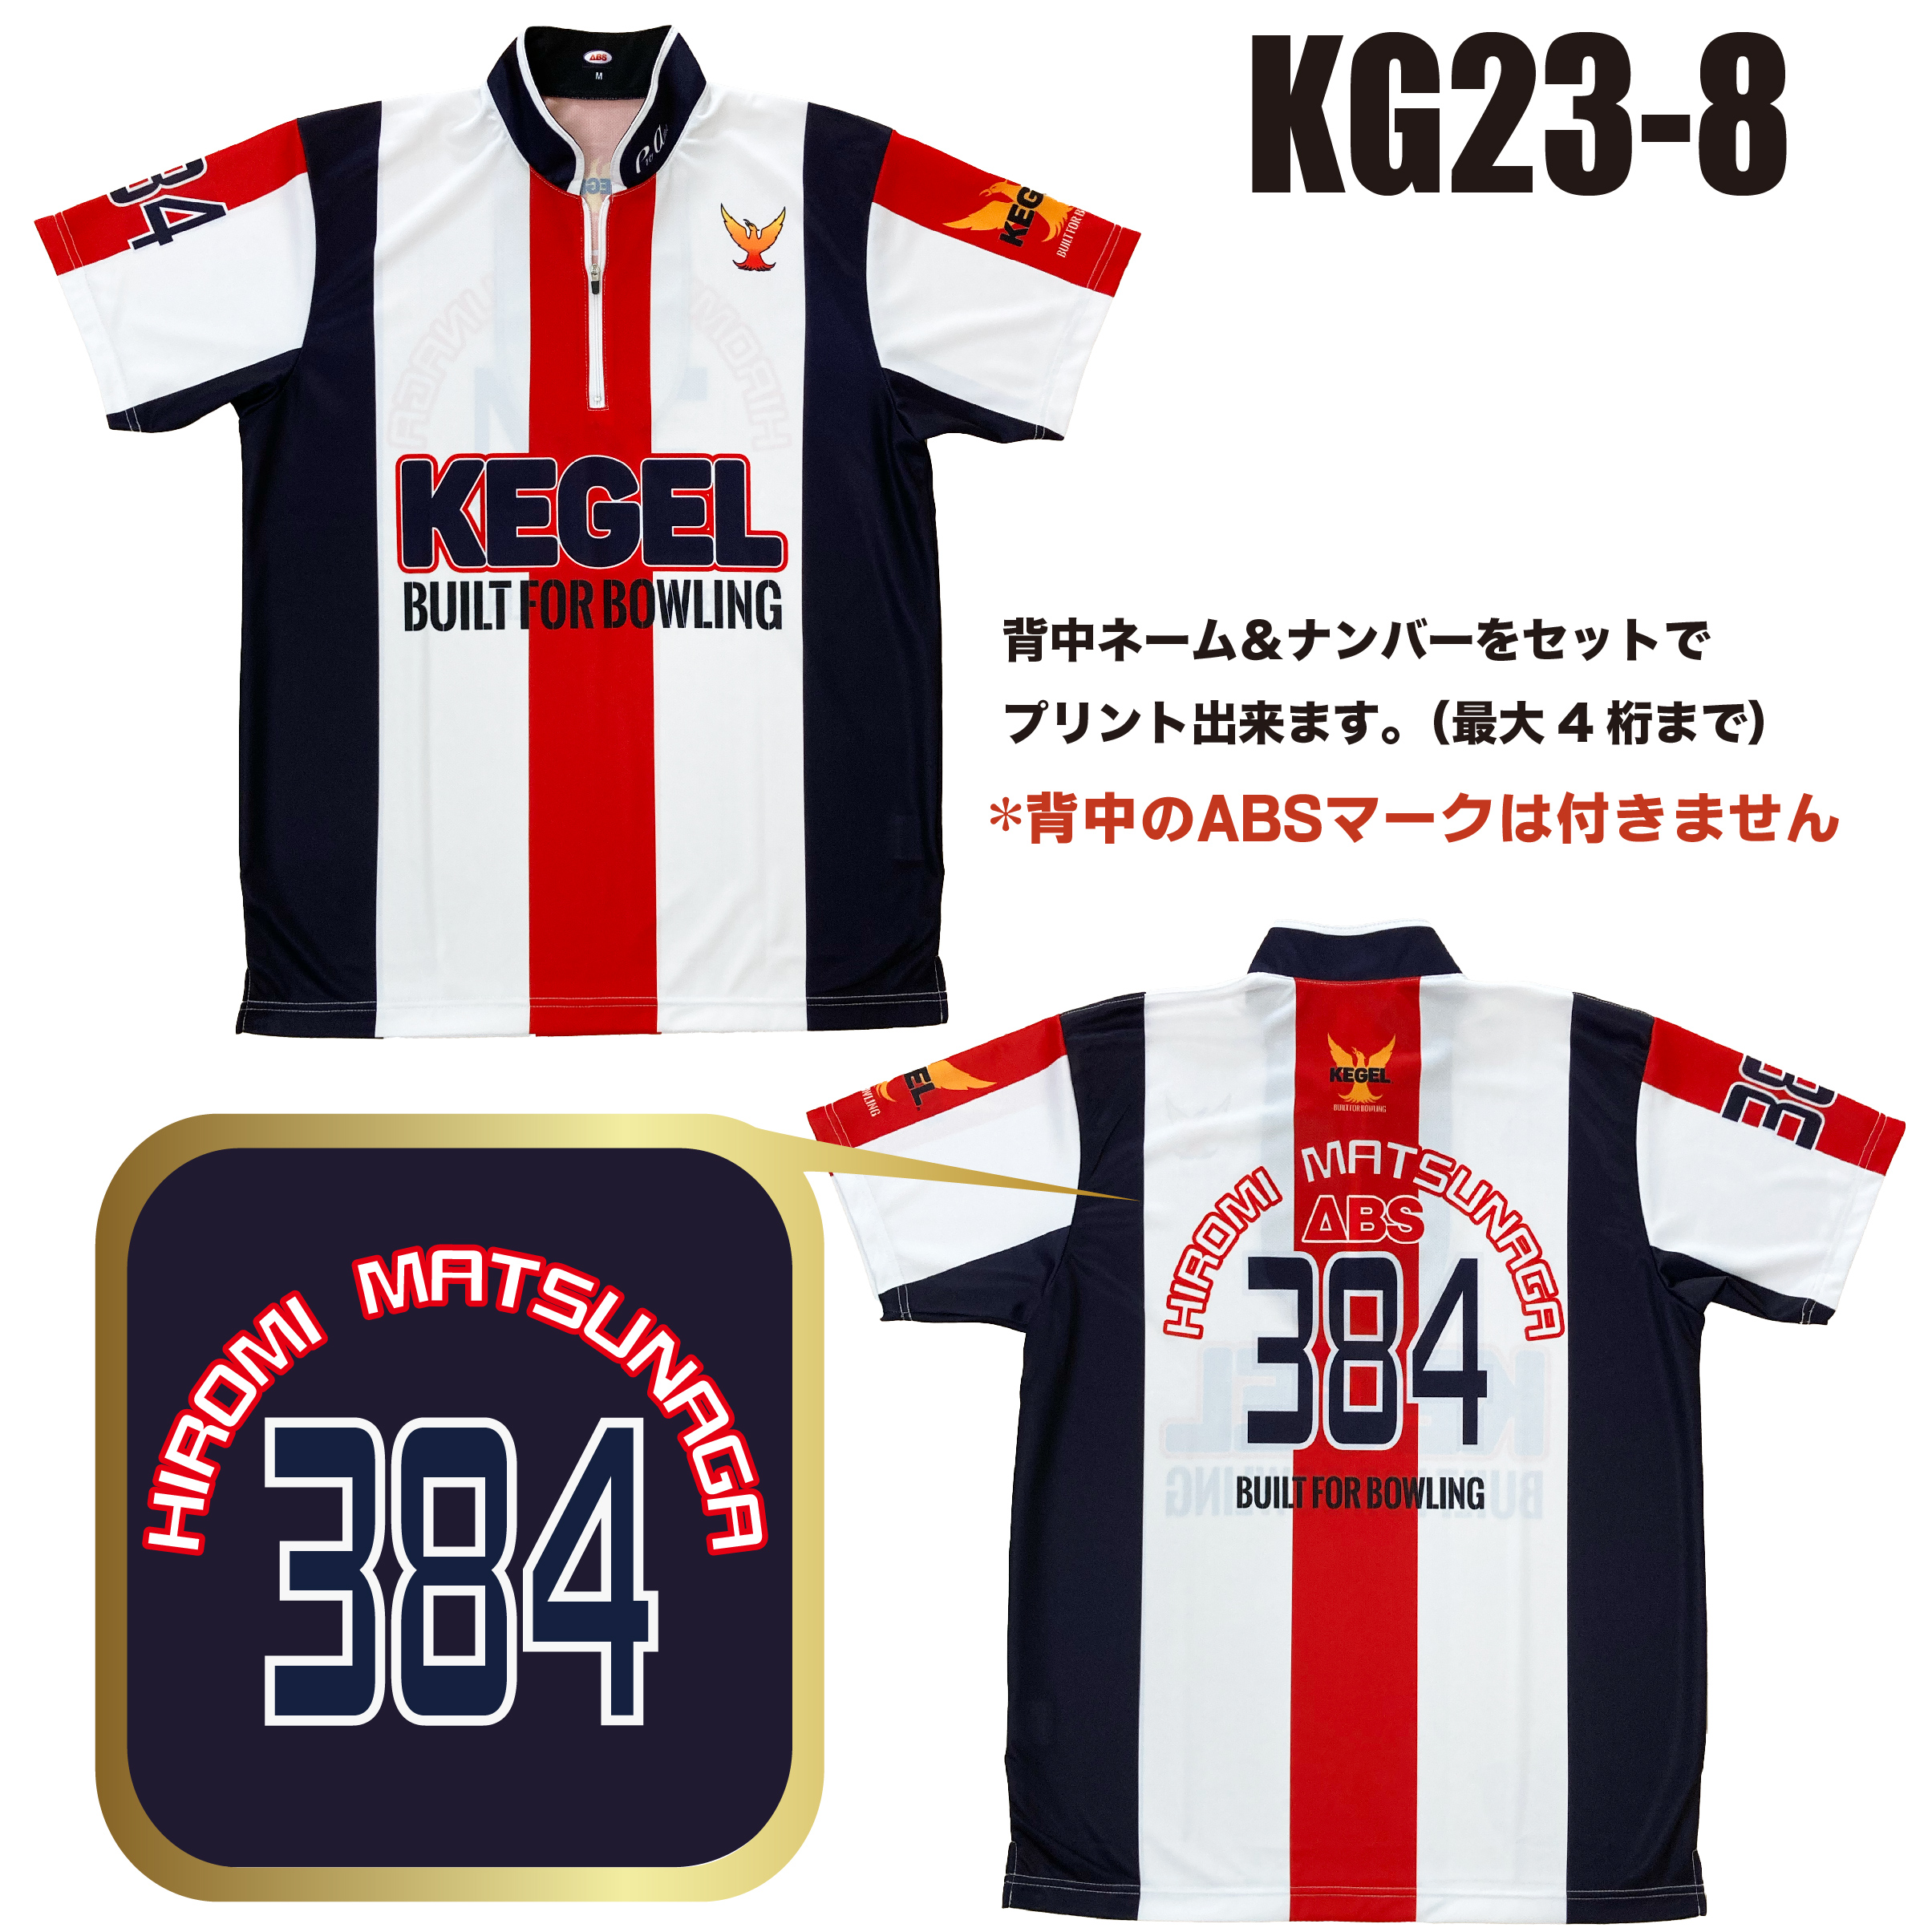 KEGEL KG23-8(受注生産)